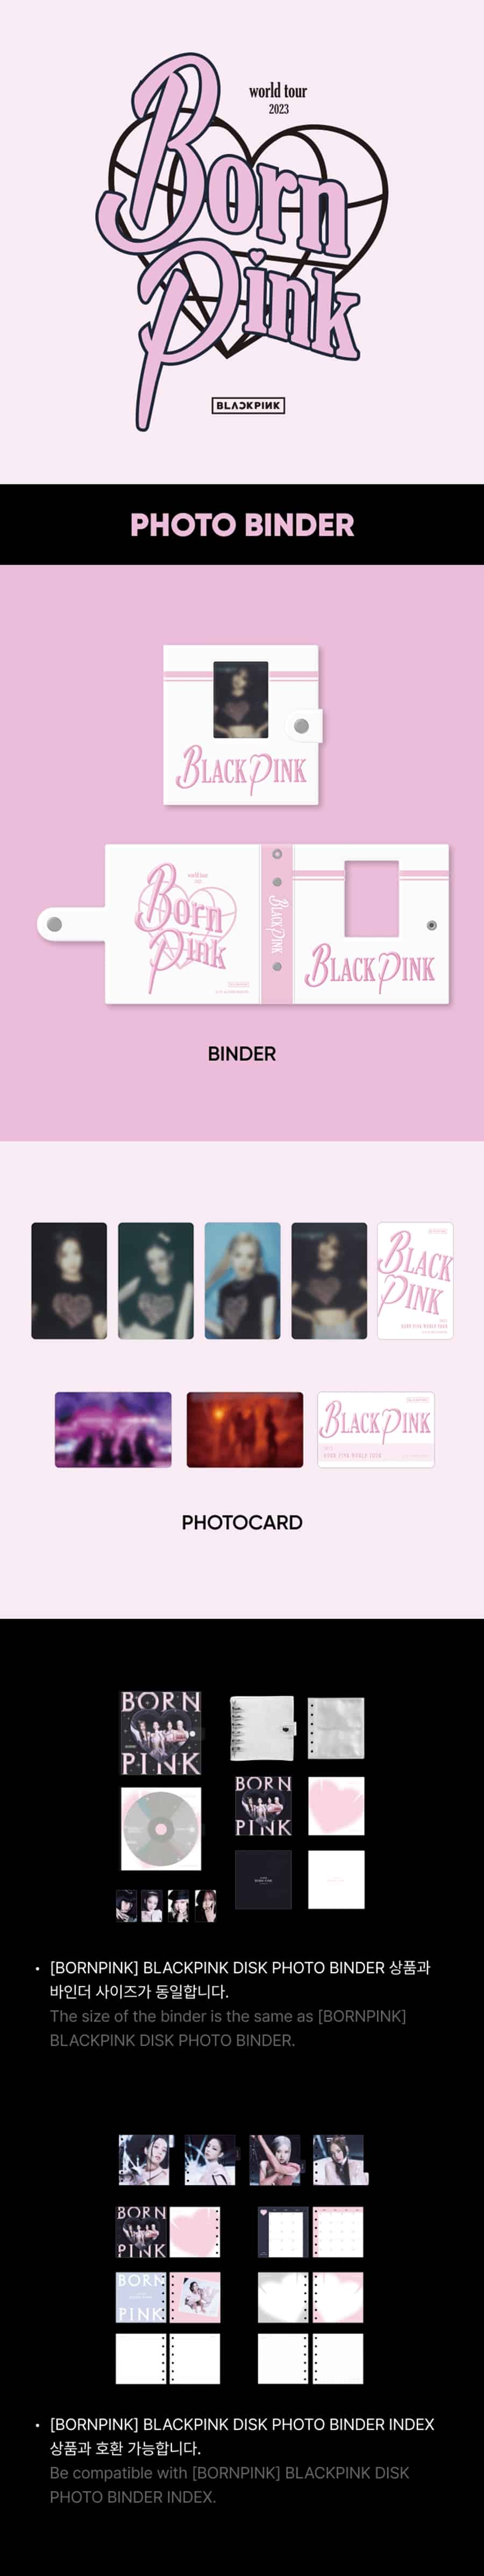 backstage-blackpink-photo-binder-wholesales